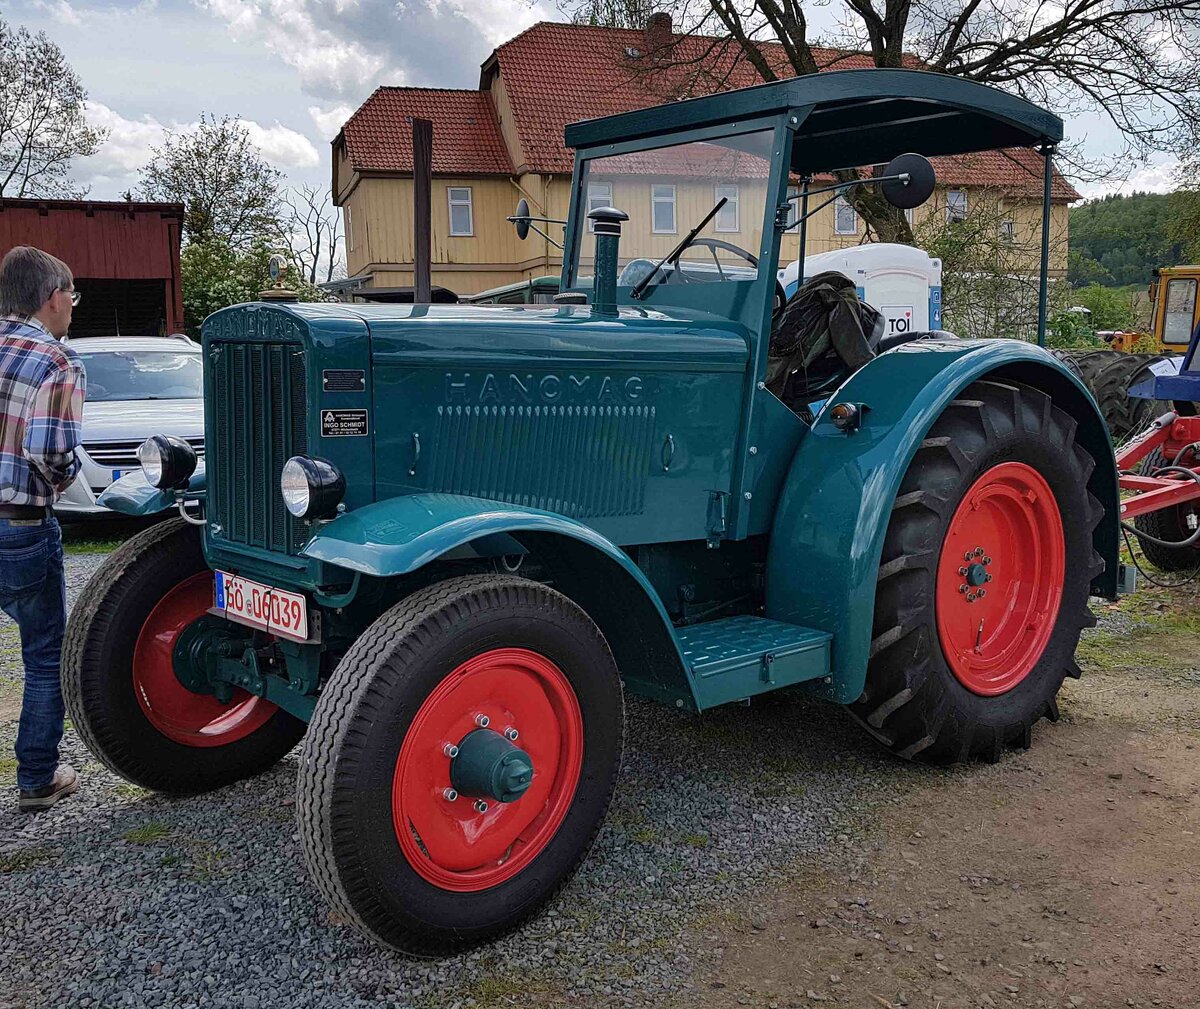 =Hanomag R 40, Bj. 1946, 5195 ccm, 40 PS, gesehen bei der Oldtimerausstellung der Traktorfreunde Wiershausen am Klostergut Hilwartshausen, 05-2023